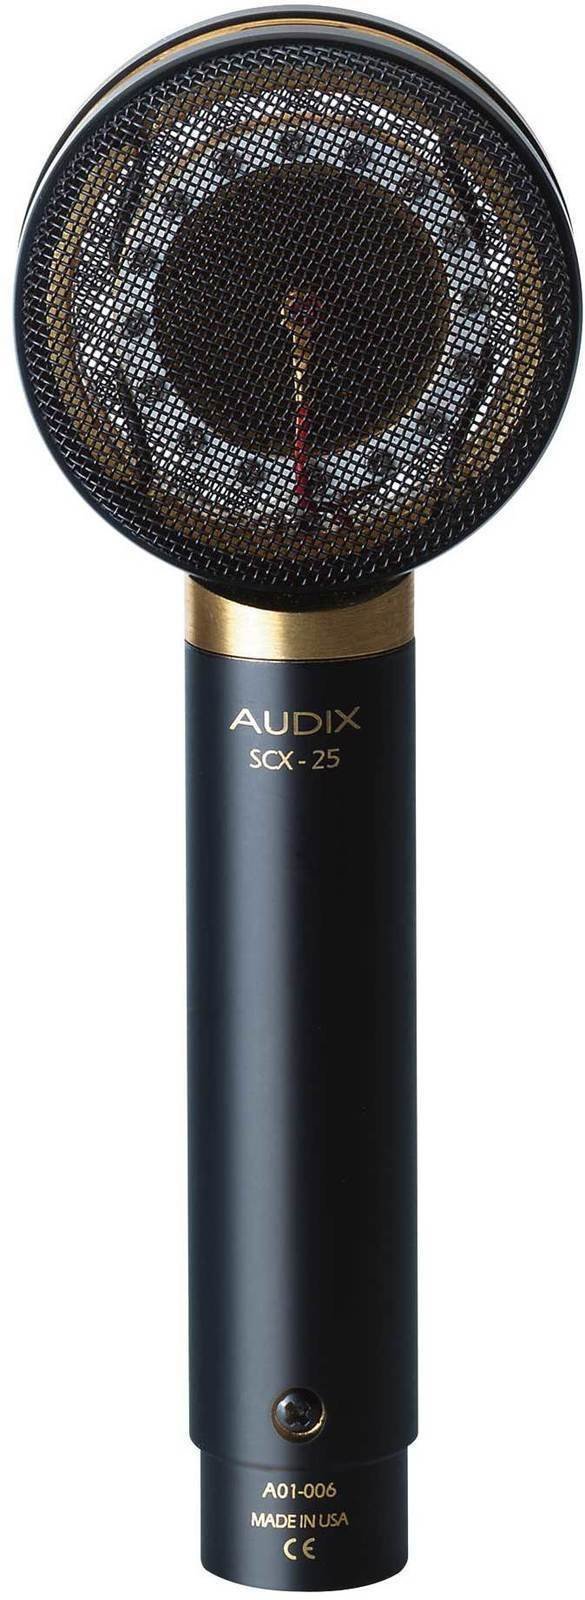 Microfon cu condensator pentru studio AUDIX SCX25-A Microfon cu condensator pentru studio